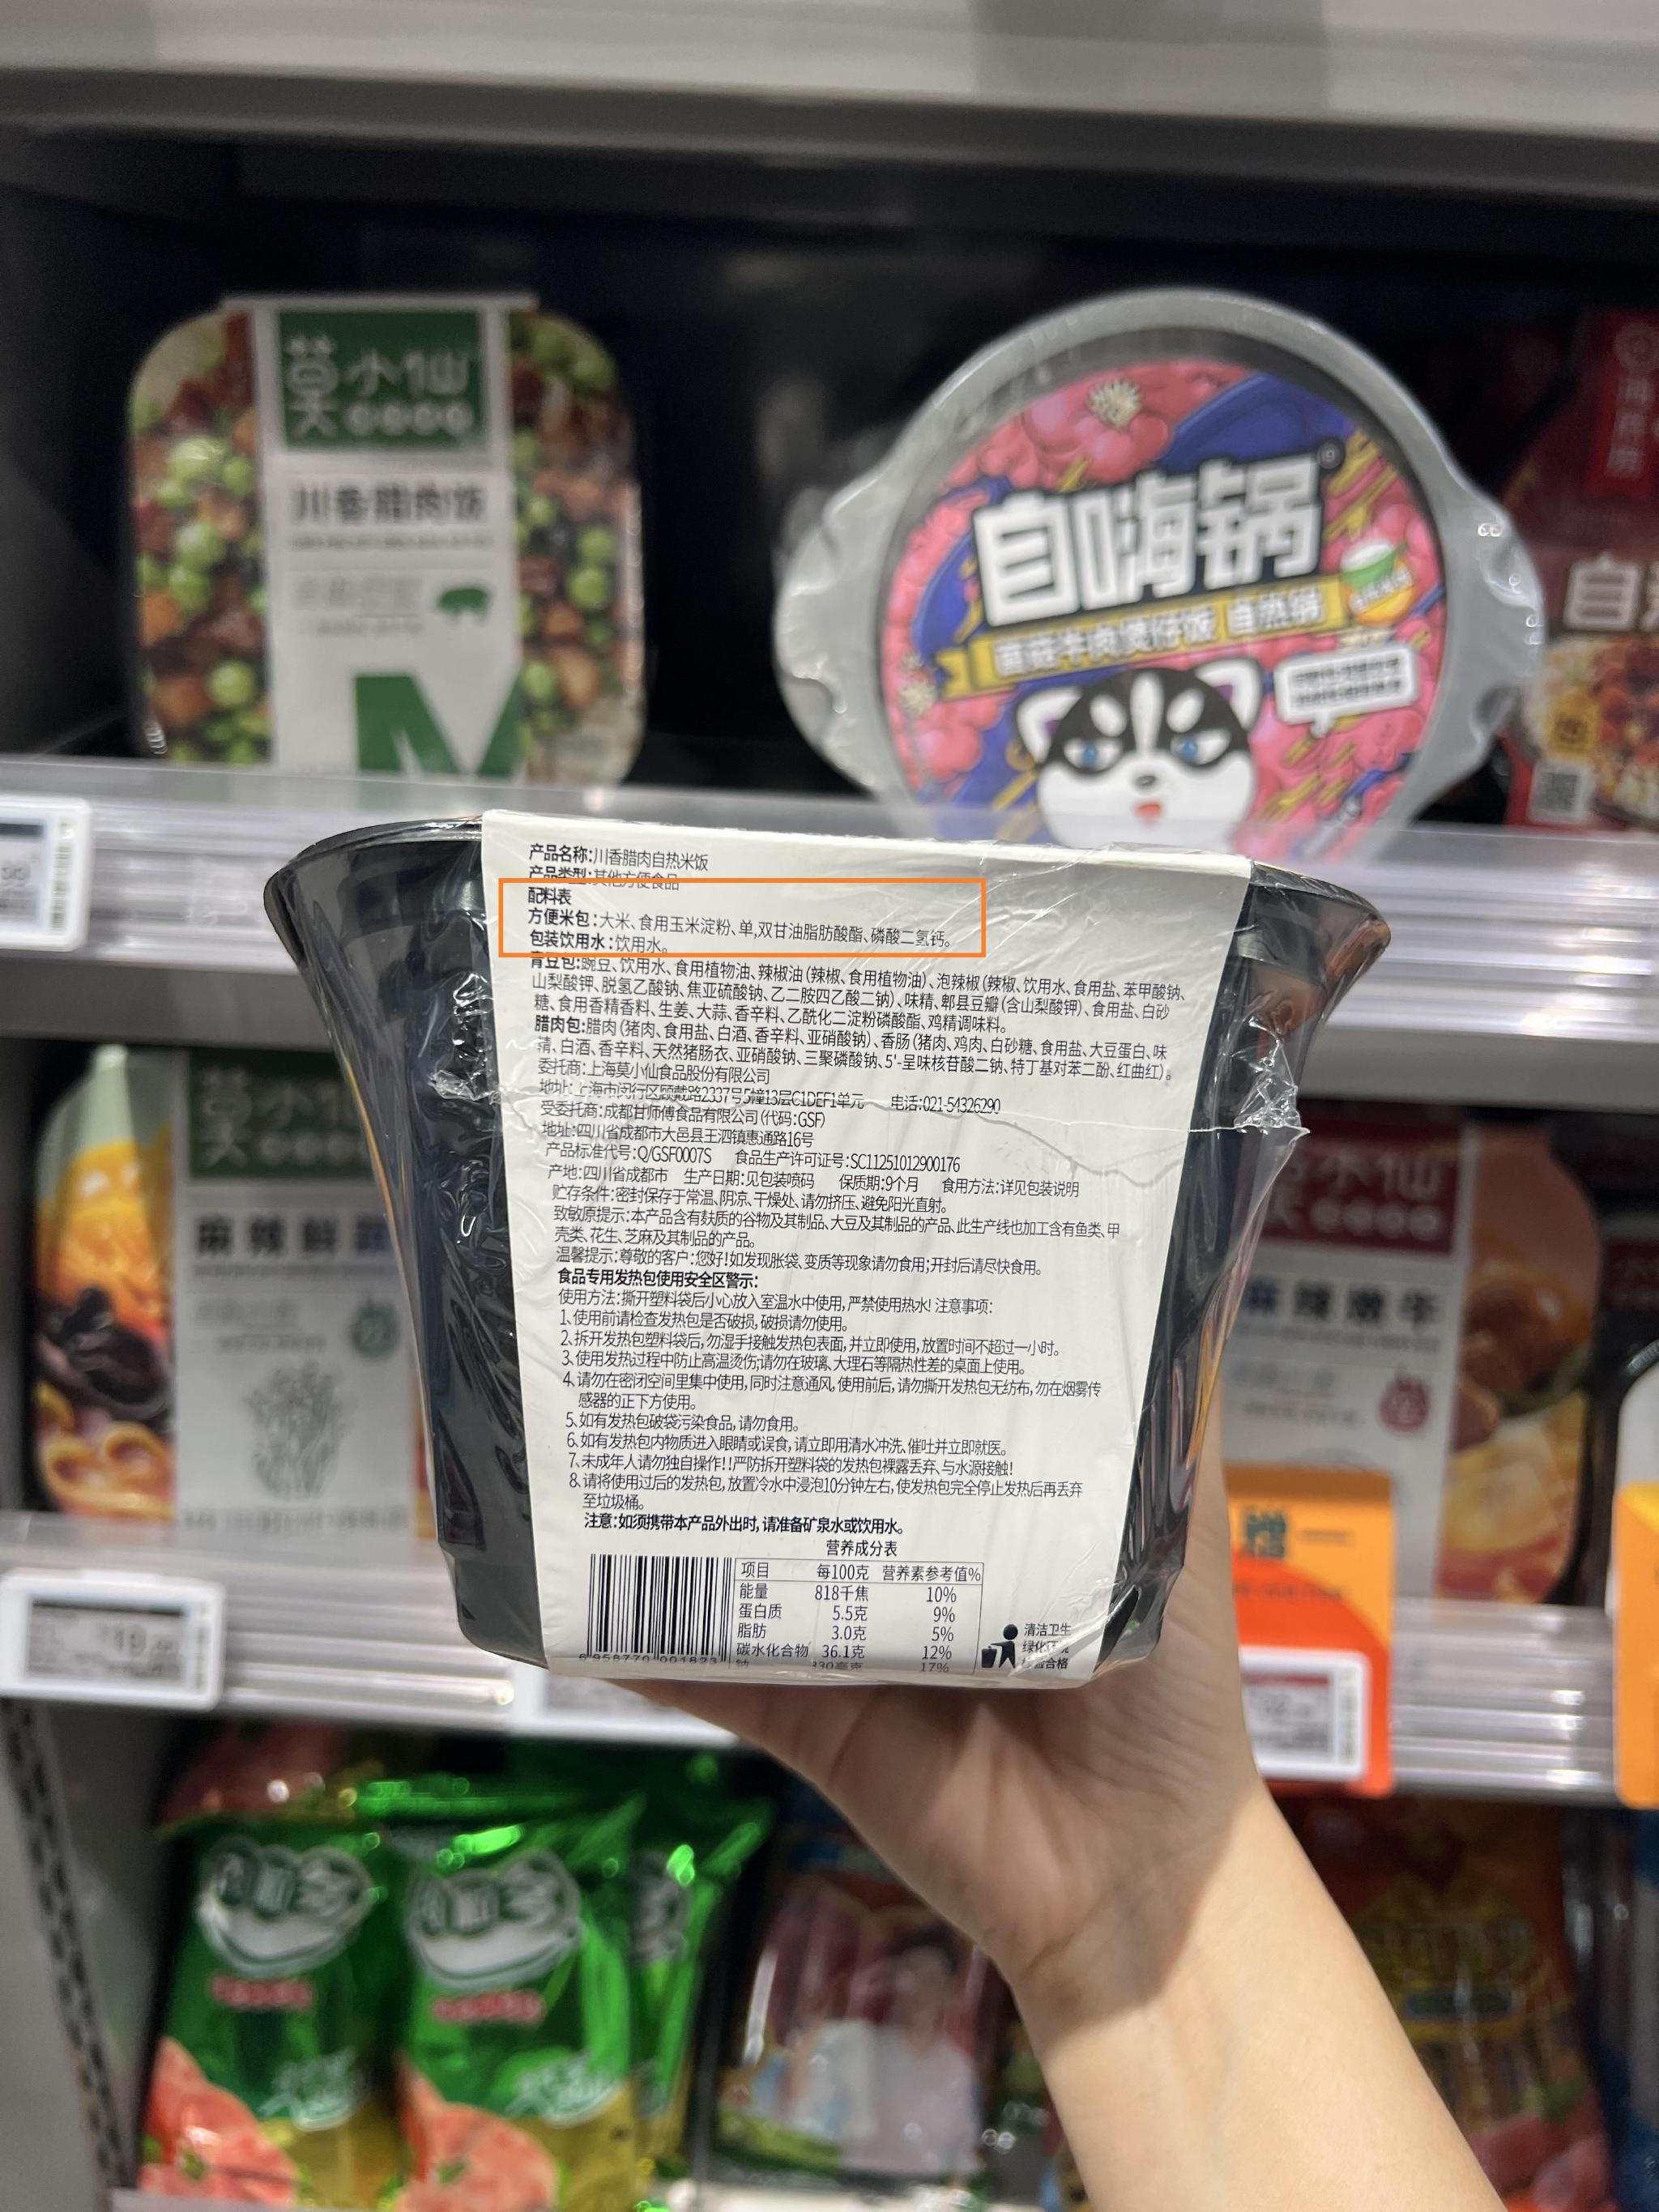 北京七鲜生活九龙山店售卖的一款莫小仙川香腊肉自热米饭。 新京报记者 刘欢 摄